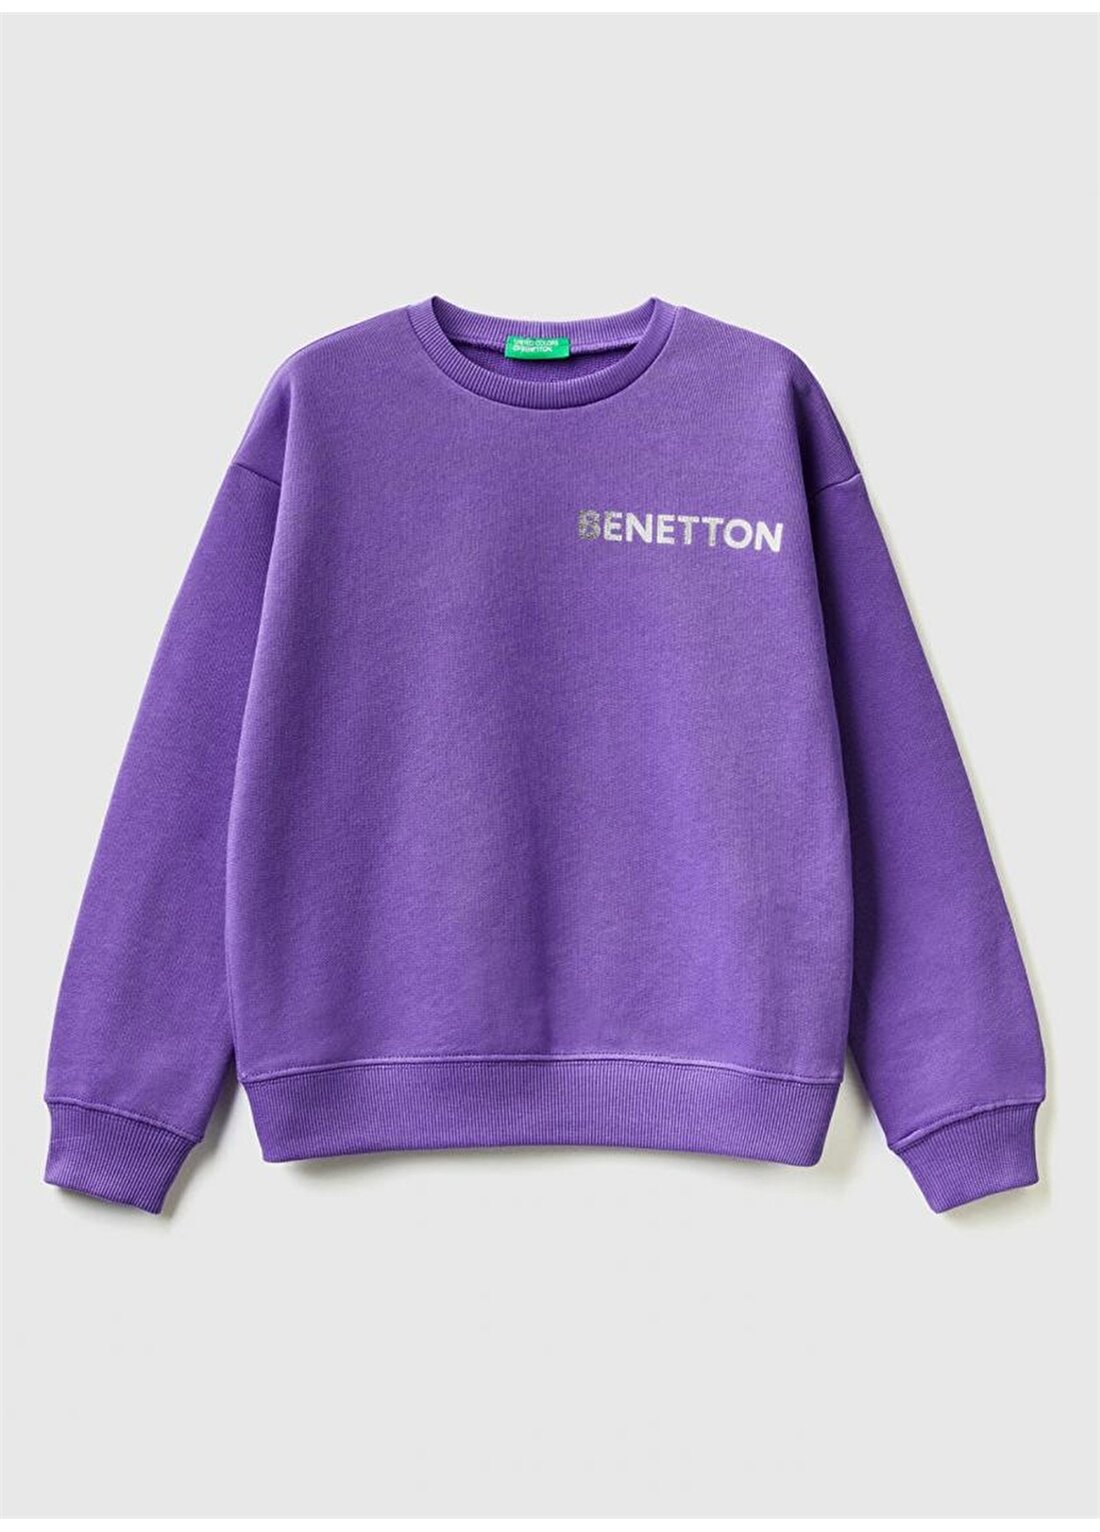 Benetton Mor Kız Çocuk Sweatshirt 3GNSC502V